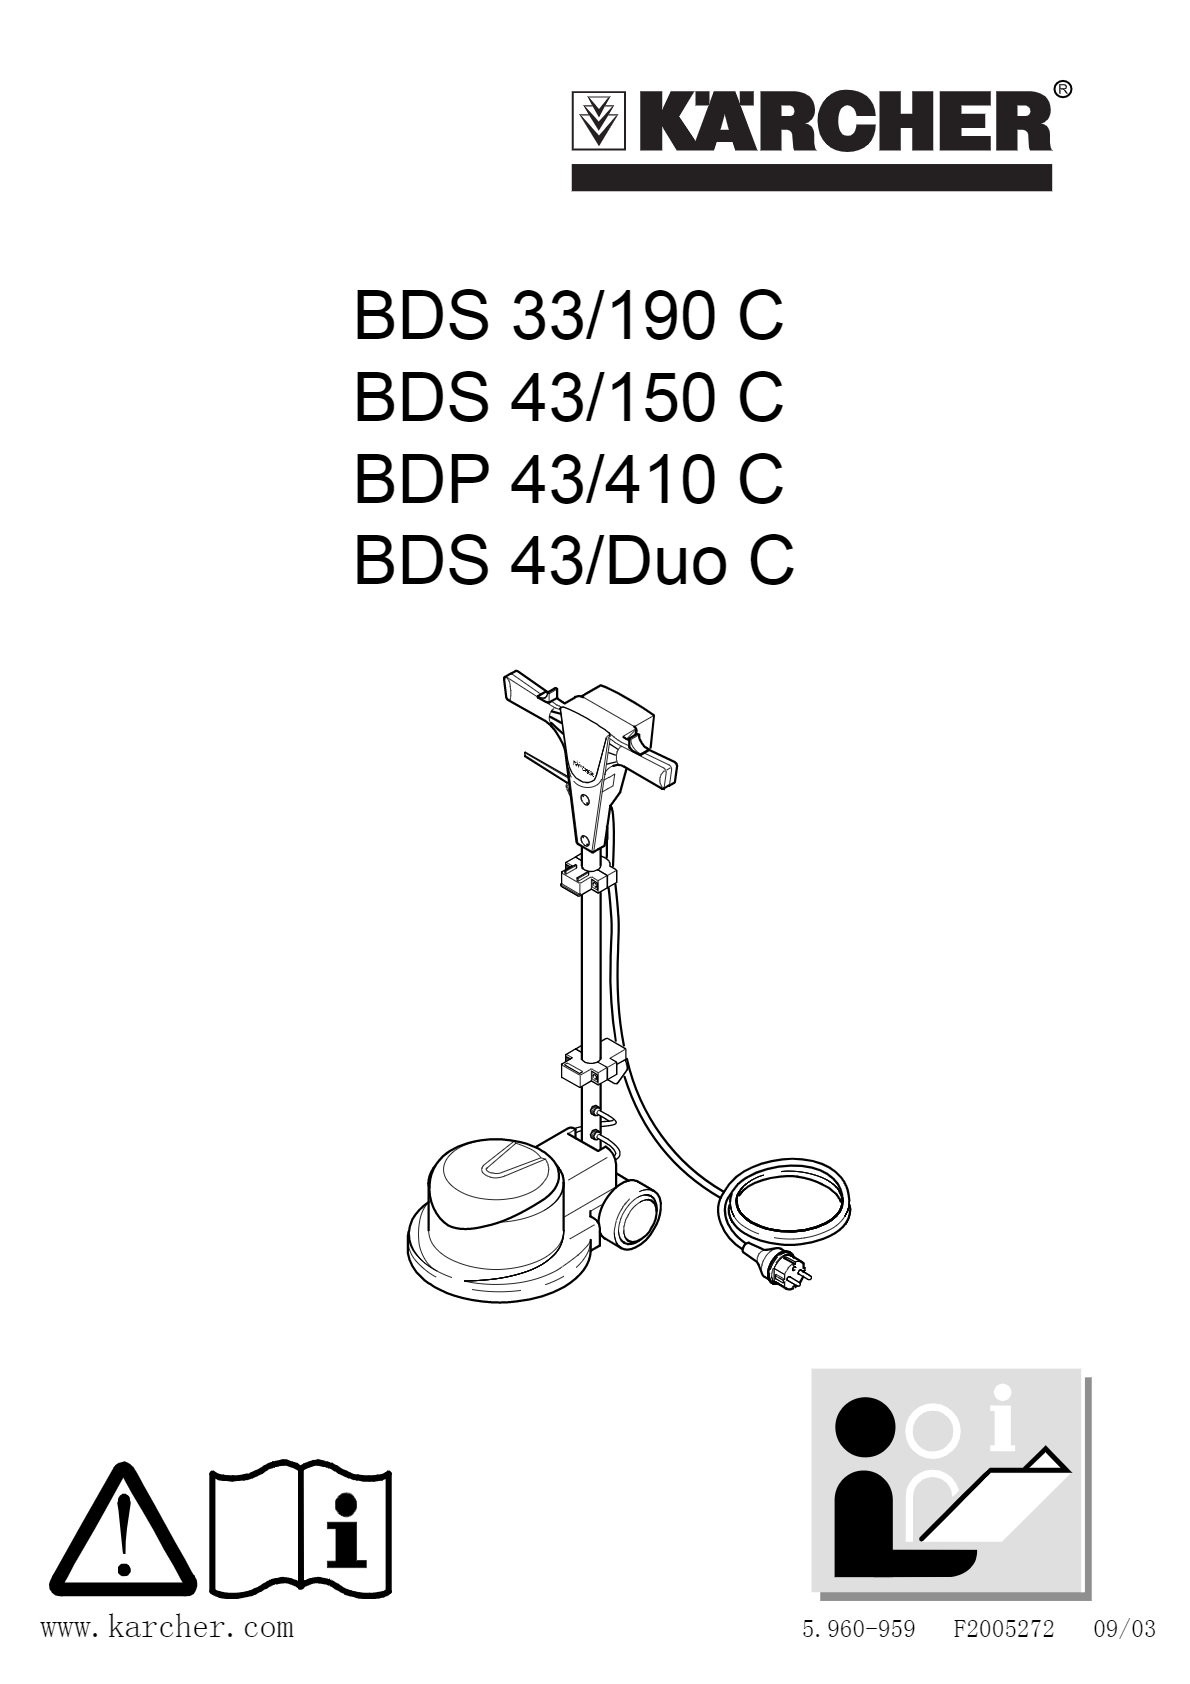 单擦机 BDS 43/150 C Classic *CN说明书下载